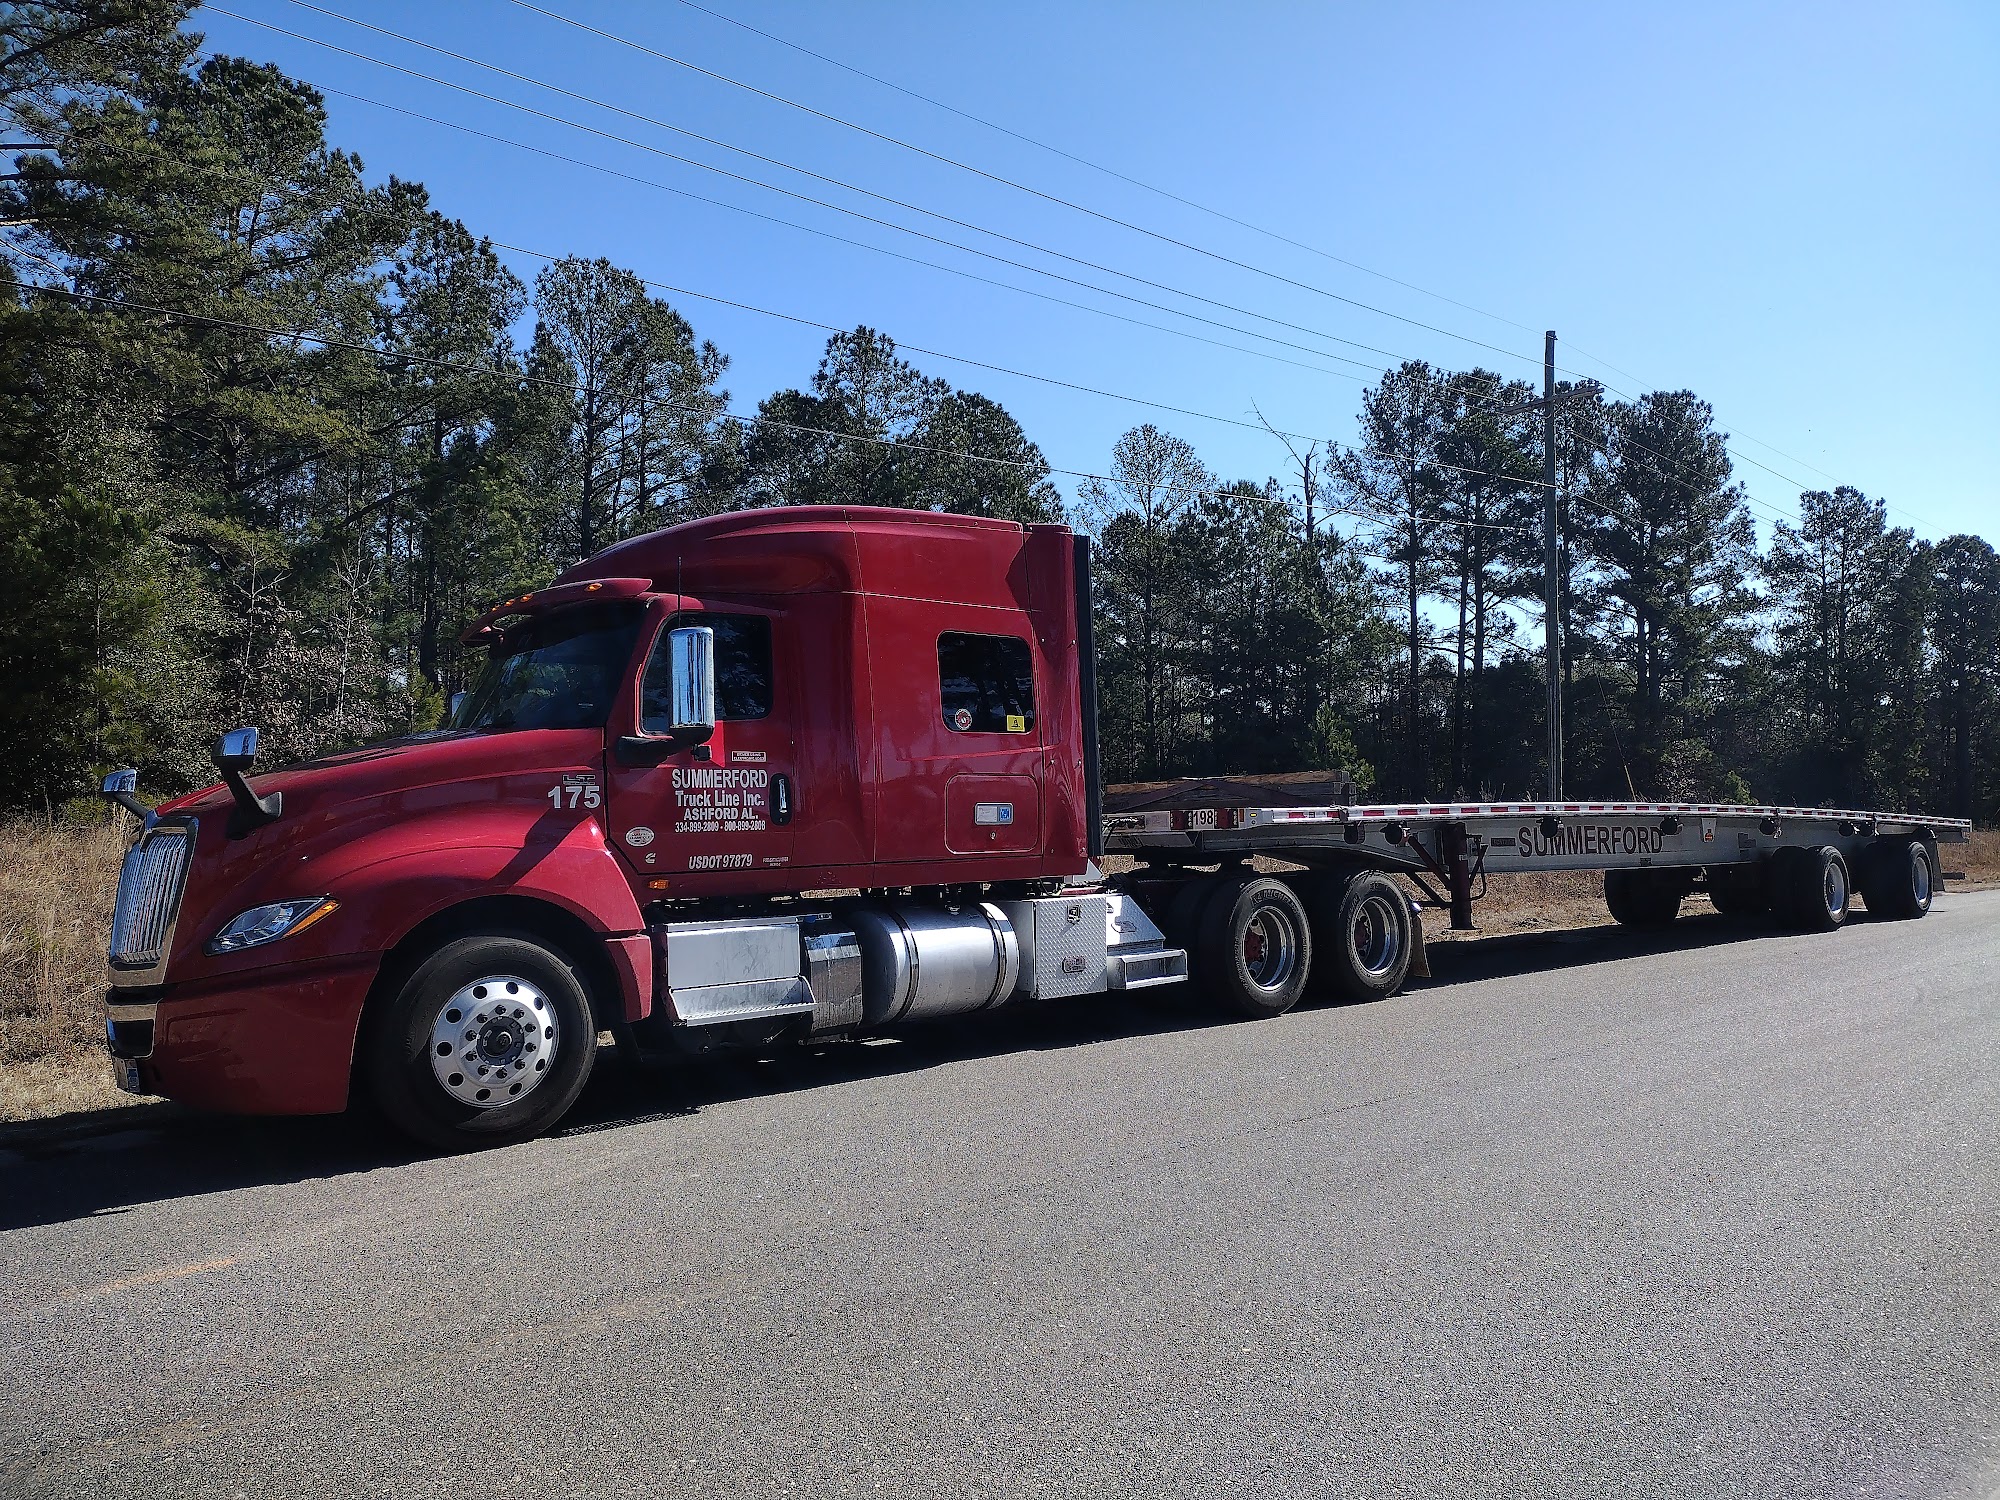 Summerford Truck Line 336 Ashford Industrial Dr, Ashford Alabama 36312